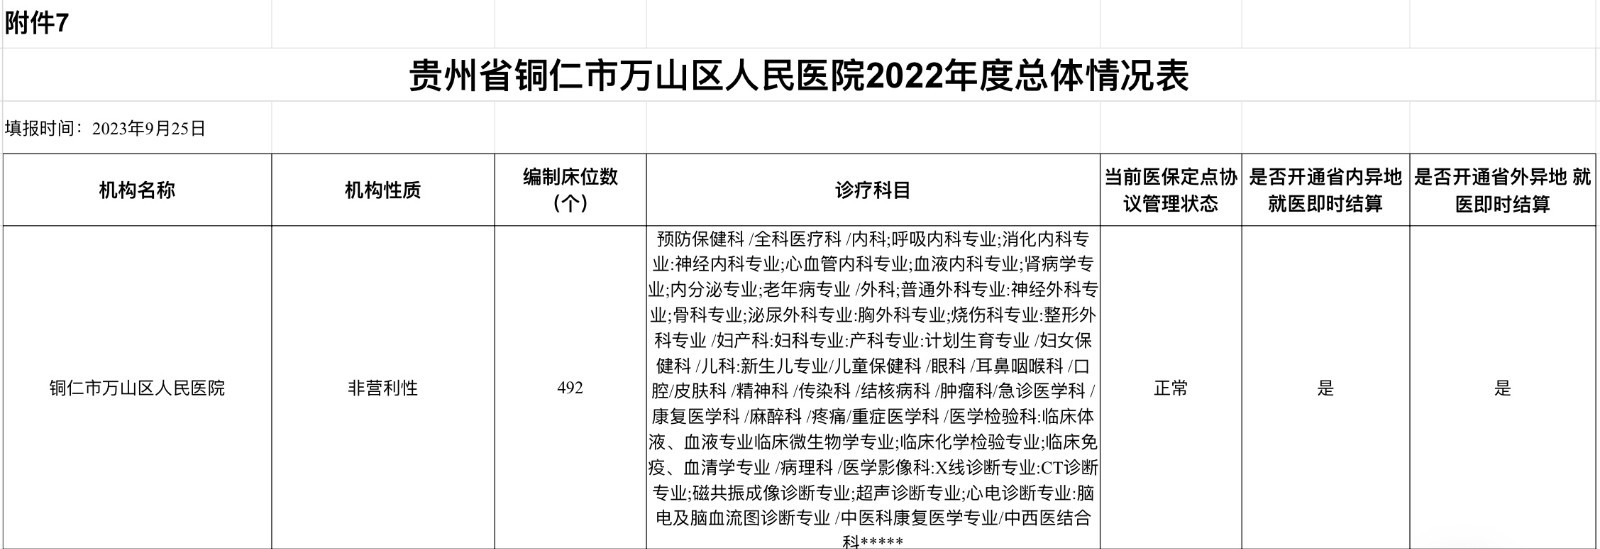 附件7：贵州省铜仁市万山区人民医院2022年度总体情况表.jpg